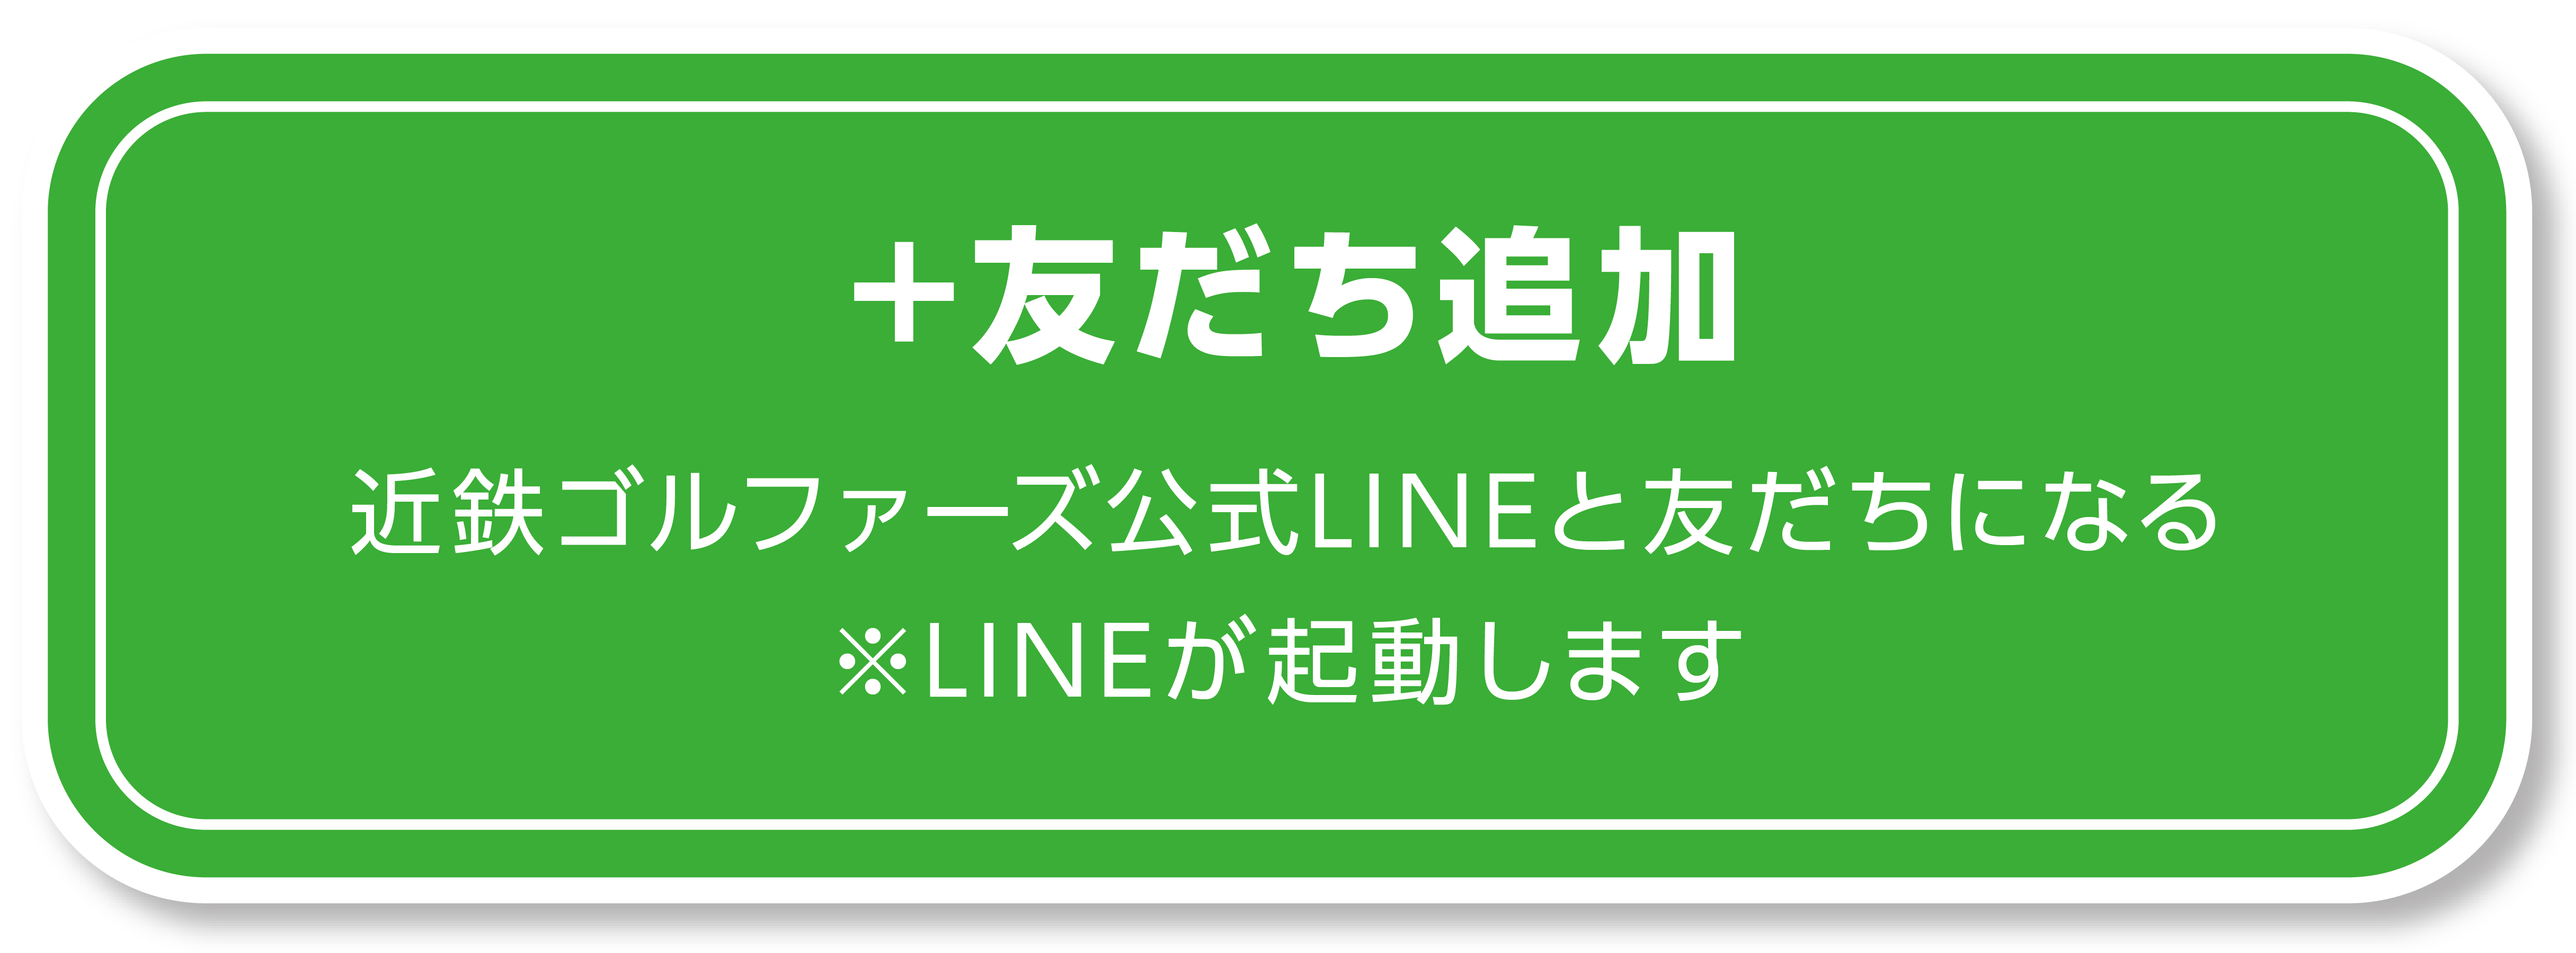 近鉄ゴルフアンドリゾート公式LINE